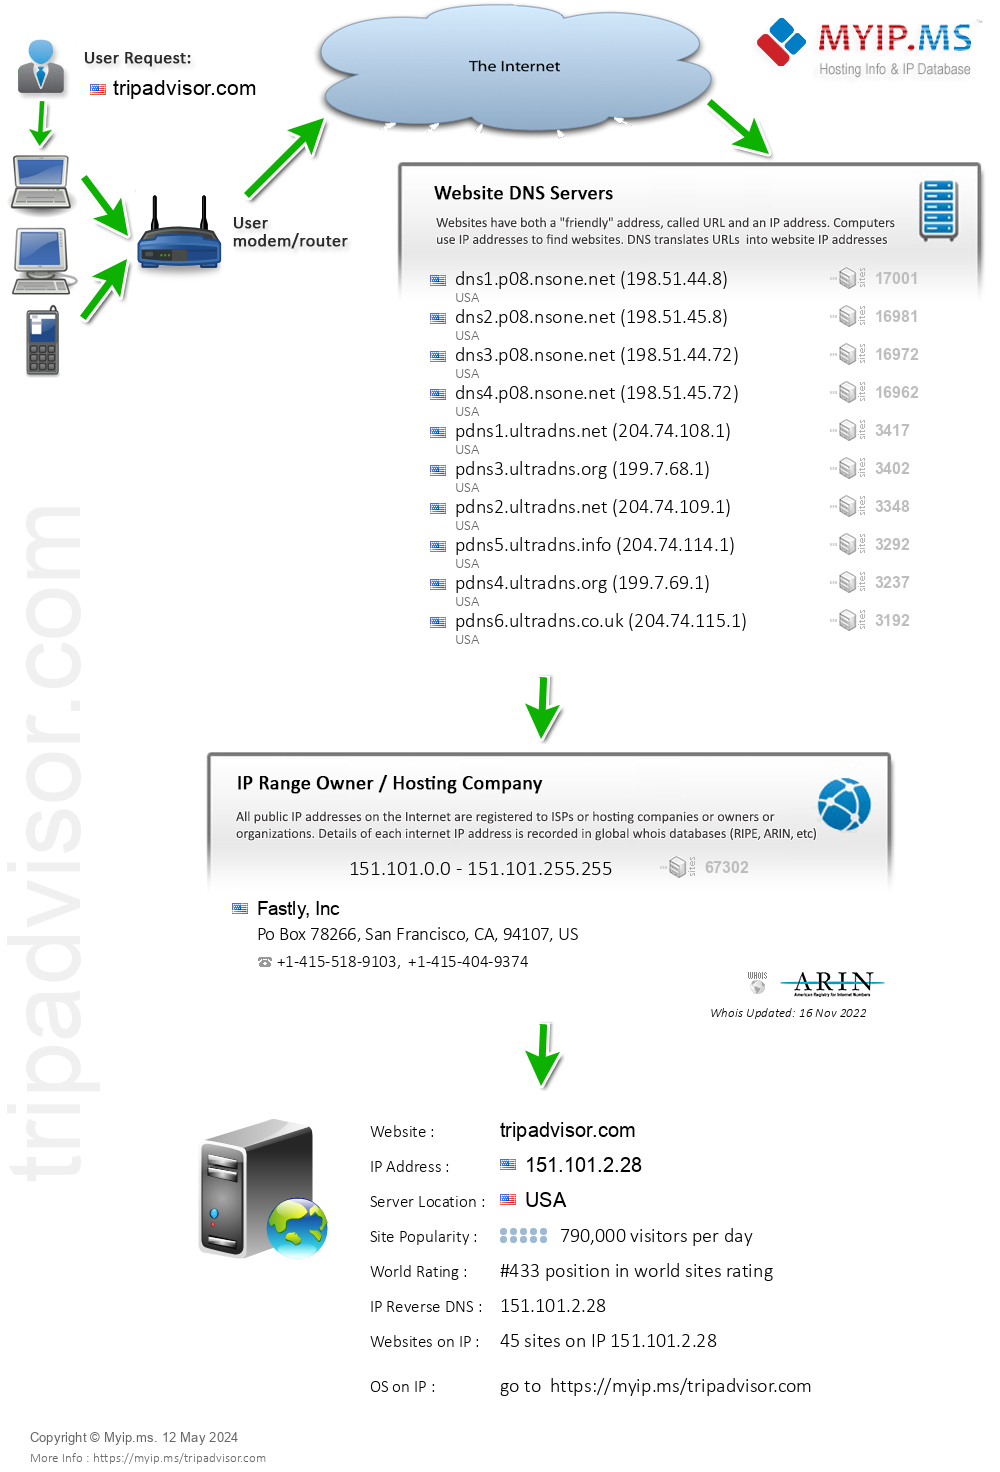 Tripadvisor.com - Website Hosting Visual IP Diagram